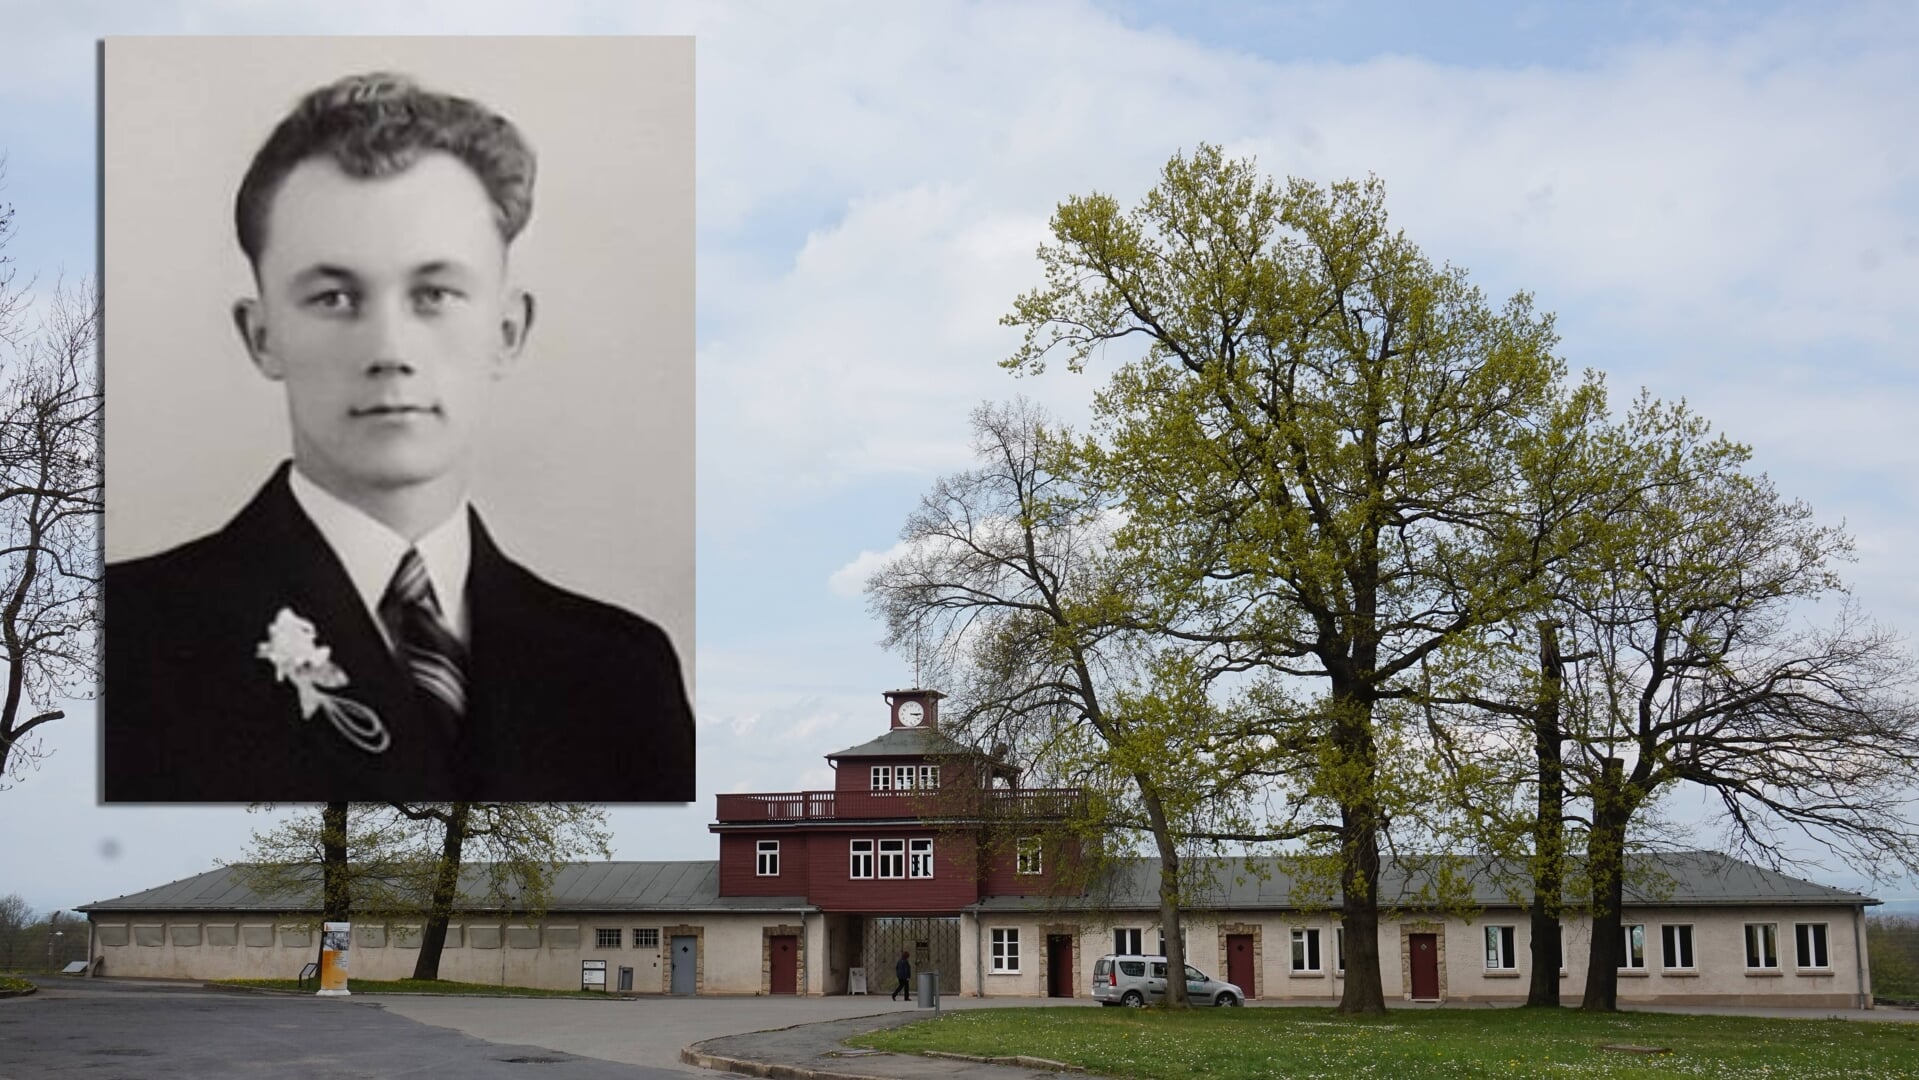 De huidige situatie Kamp Buchenwald met als inzet de trouwfoto van opa Geert Liemburg.